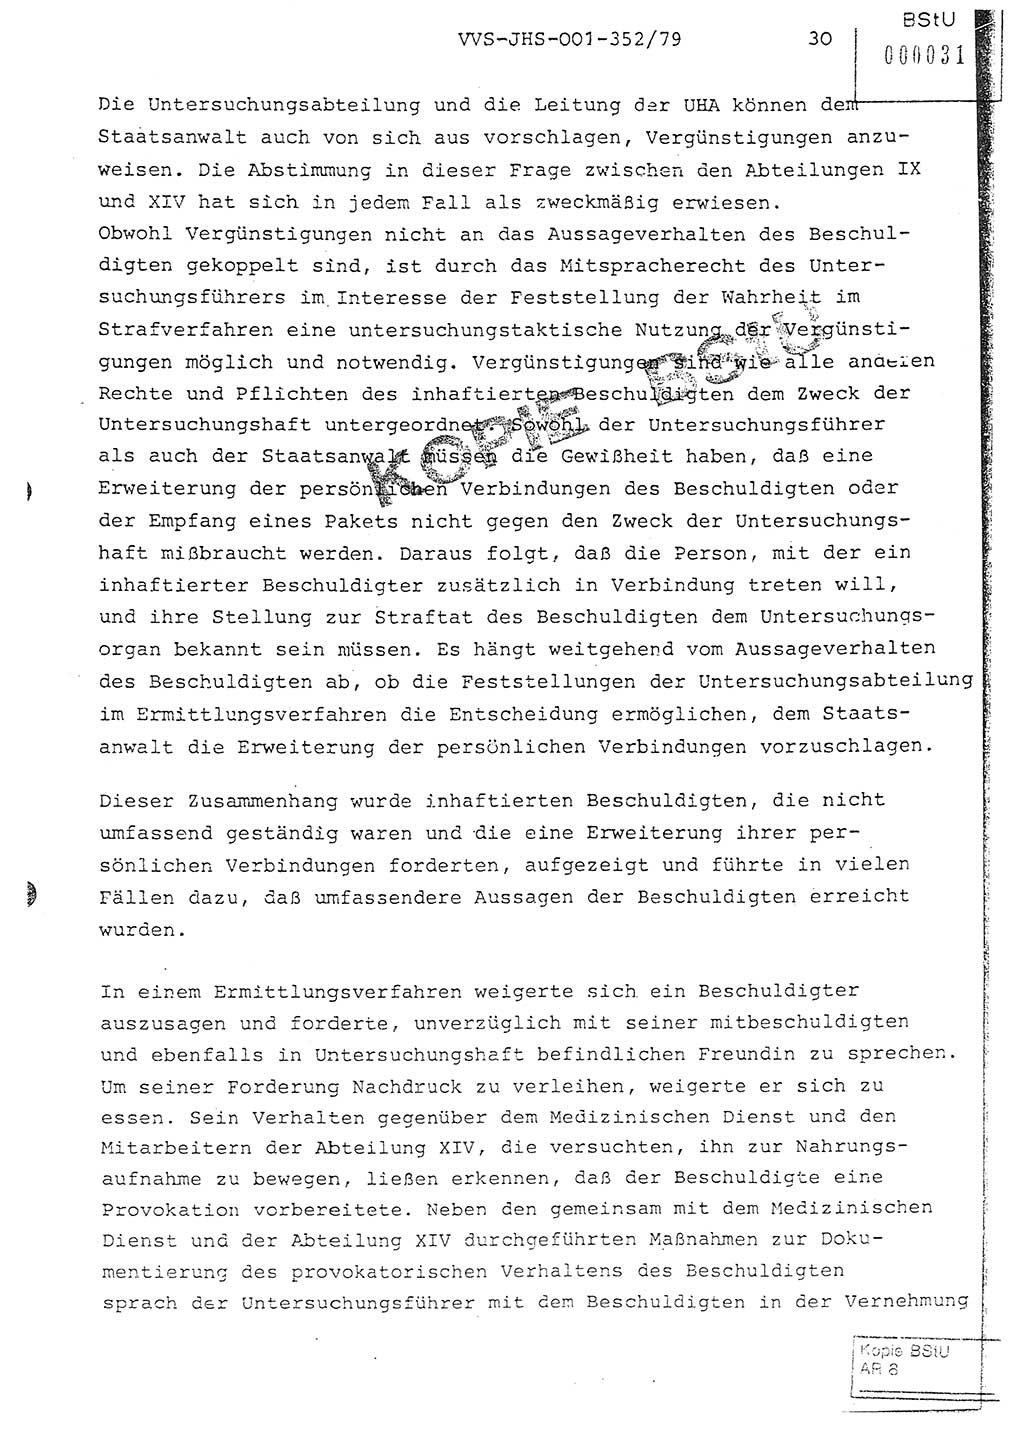 Diplomarbeit Hauptmann Peter Wittum (BV Bln. Abt. HA Ⅸ), Ministerium für Staatssicherheit (MfS) [Deutsche Demokratische Republik (DDR)], Juristische Hochschule (JHS), Vertrauliche Verschlußsache (VVS) o001-352/79, Potsdam 1979, Seite 30 (Dipl.-Arb. MfS DDR JHS VVS o001-352/79 1979, S. 30)